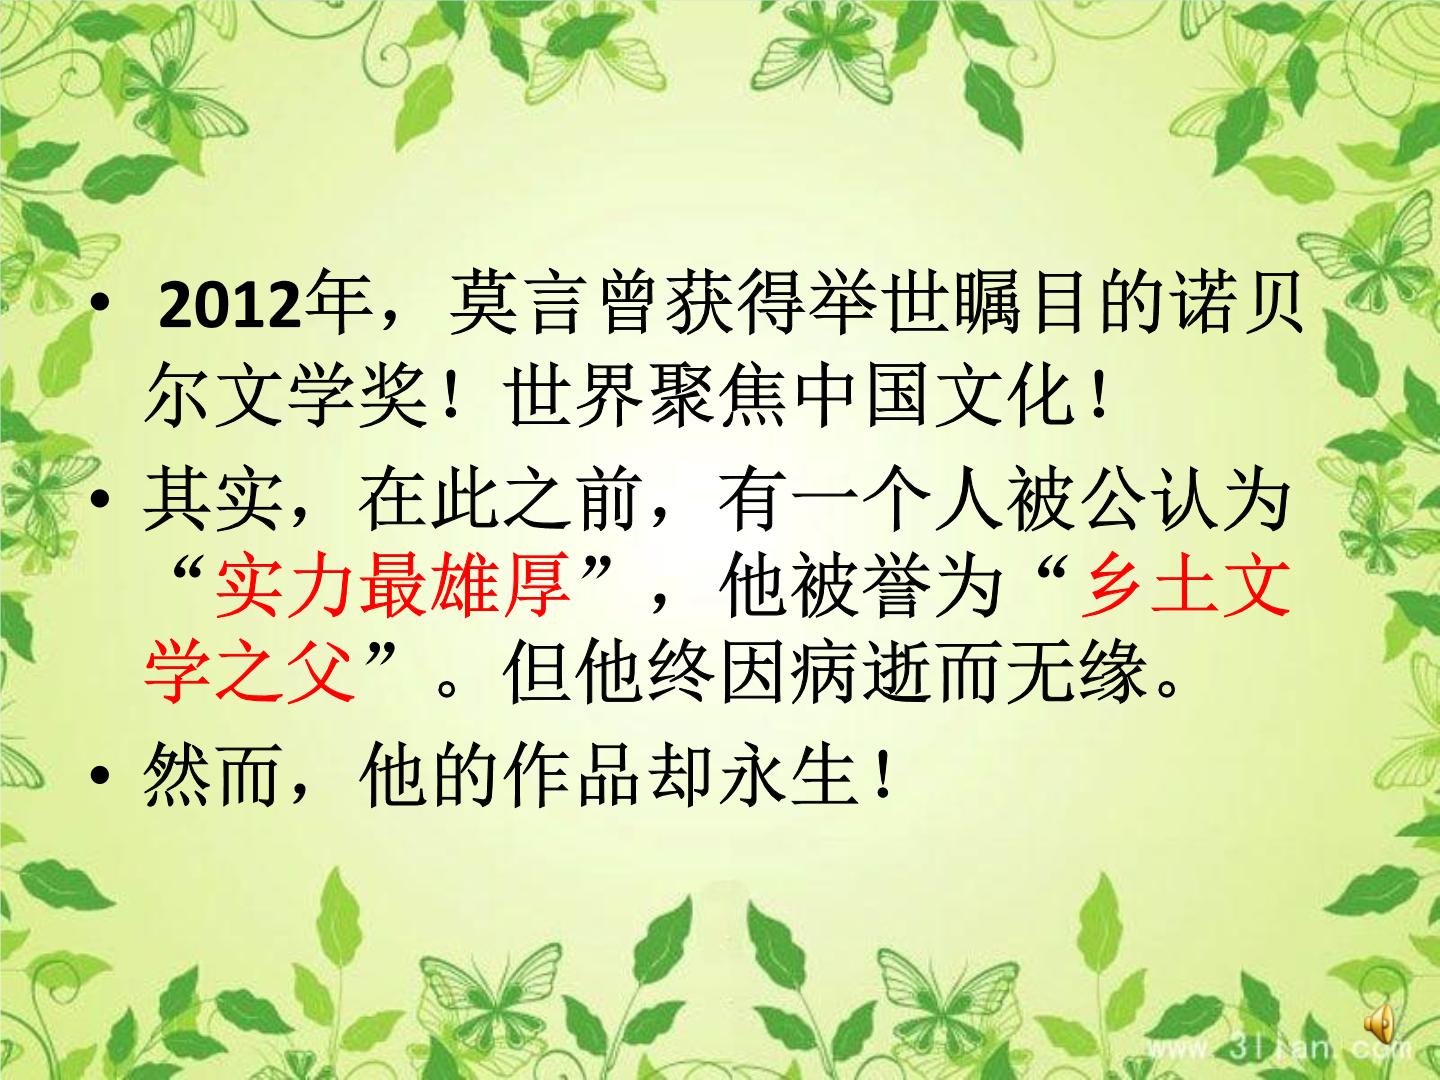 八年级上语文课件云南的歌会 (2)_鲁教版